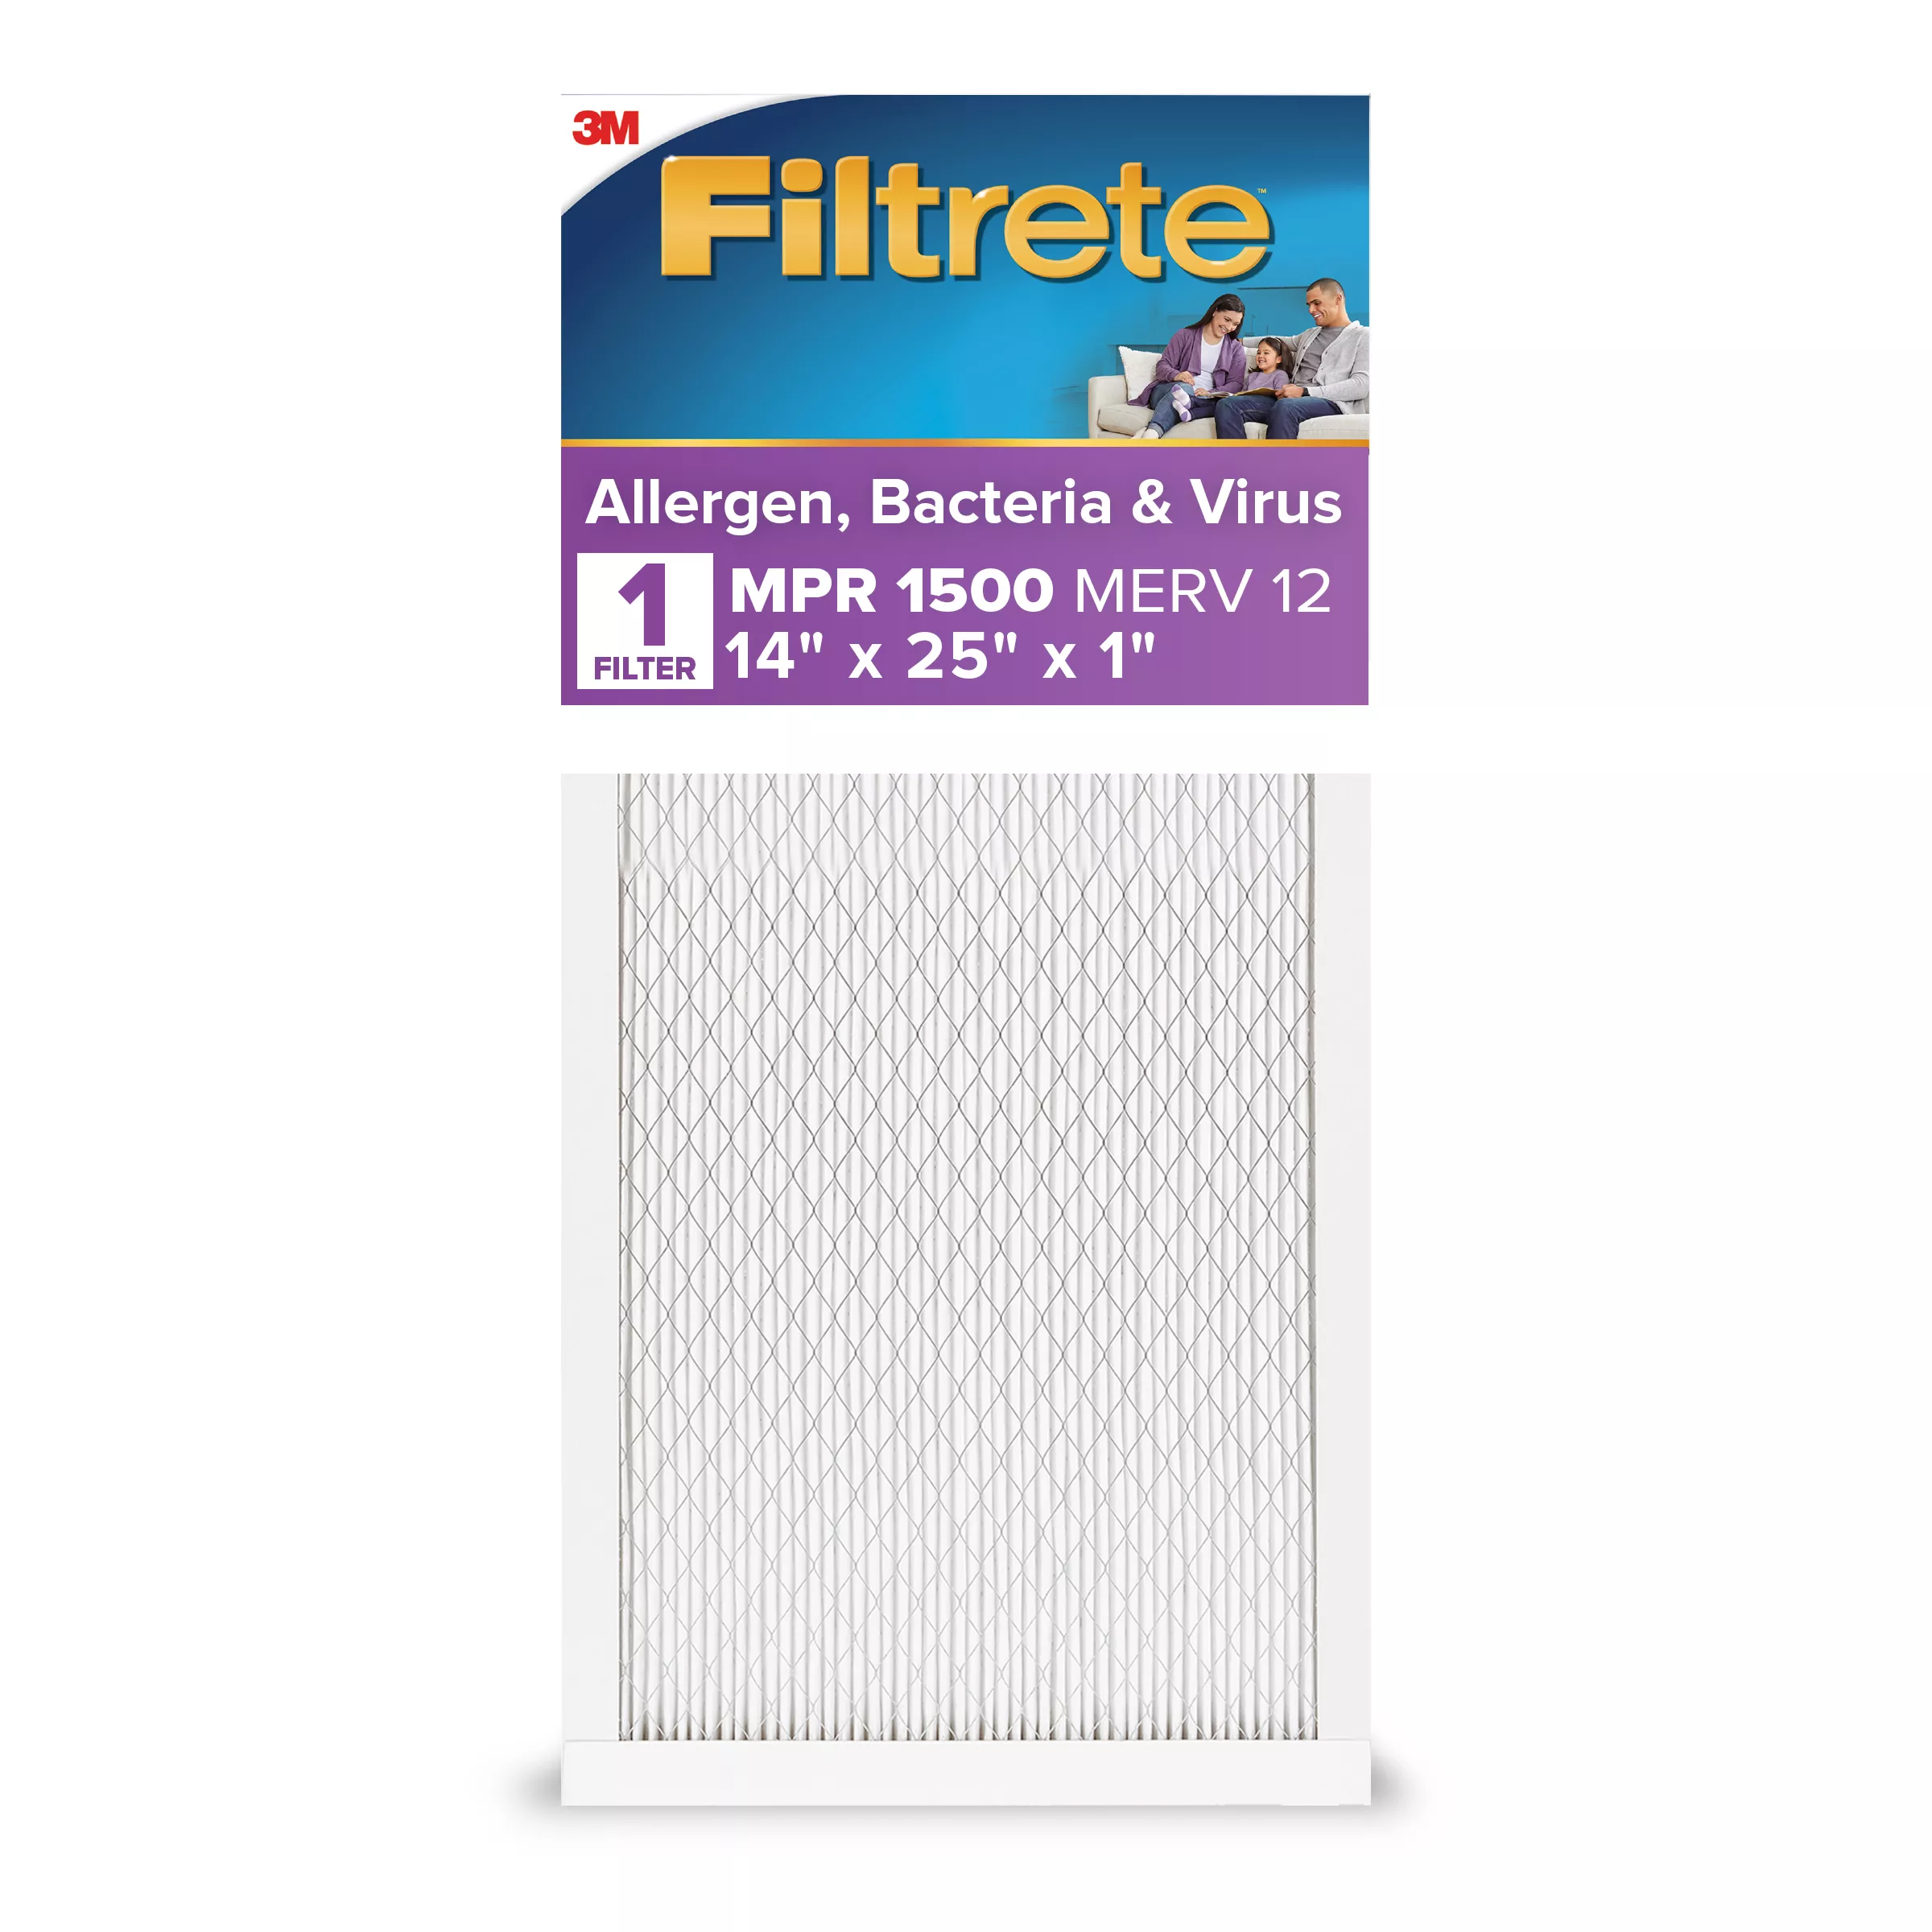 Filtrete™ High Performance Air Filter 1500 MPR 2004-4, 14 in x 25 in x 1 in (35.5 cm x 63.5 cm x 2.5 cm)